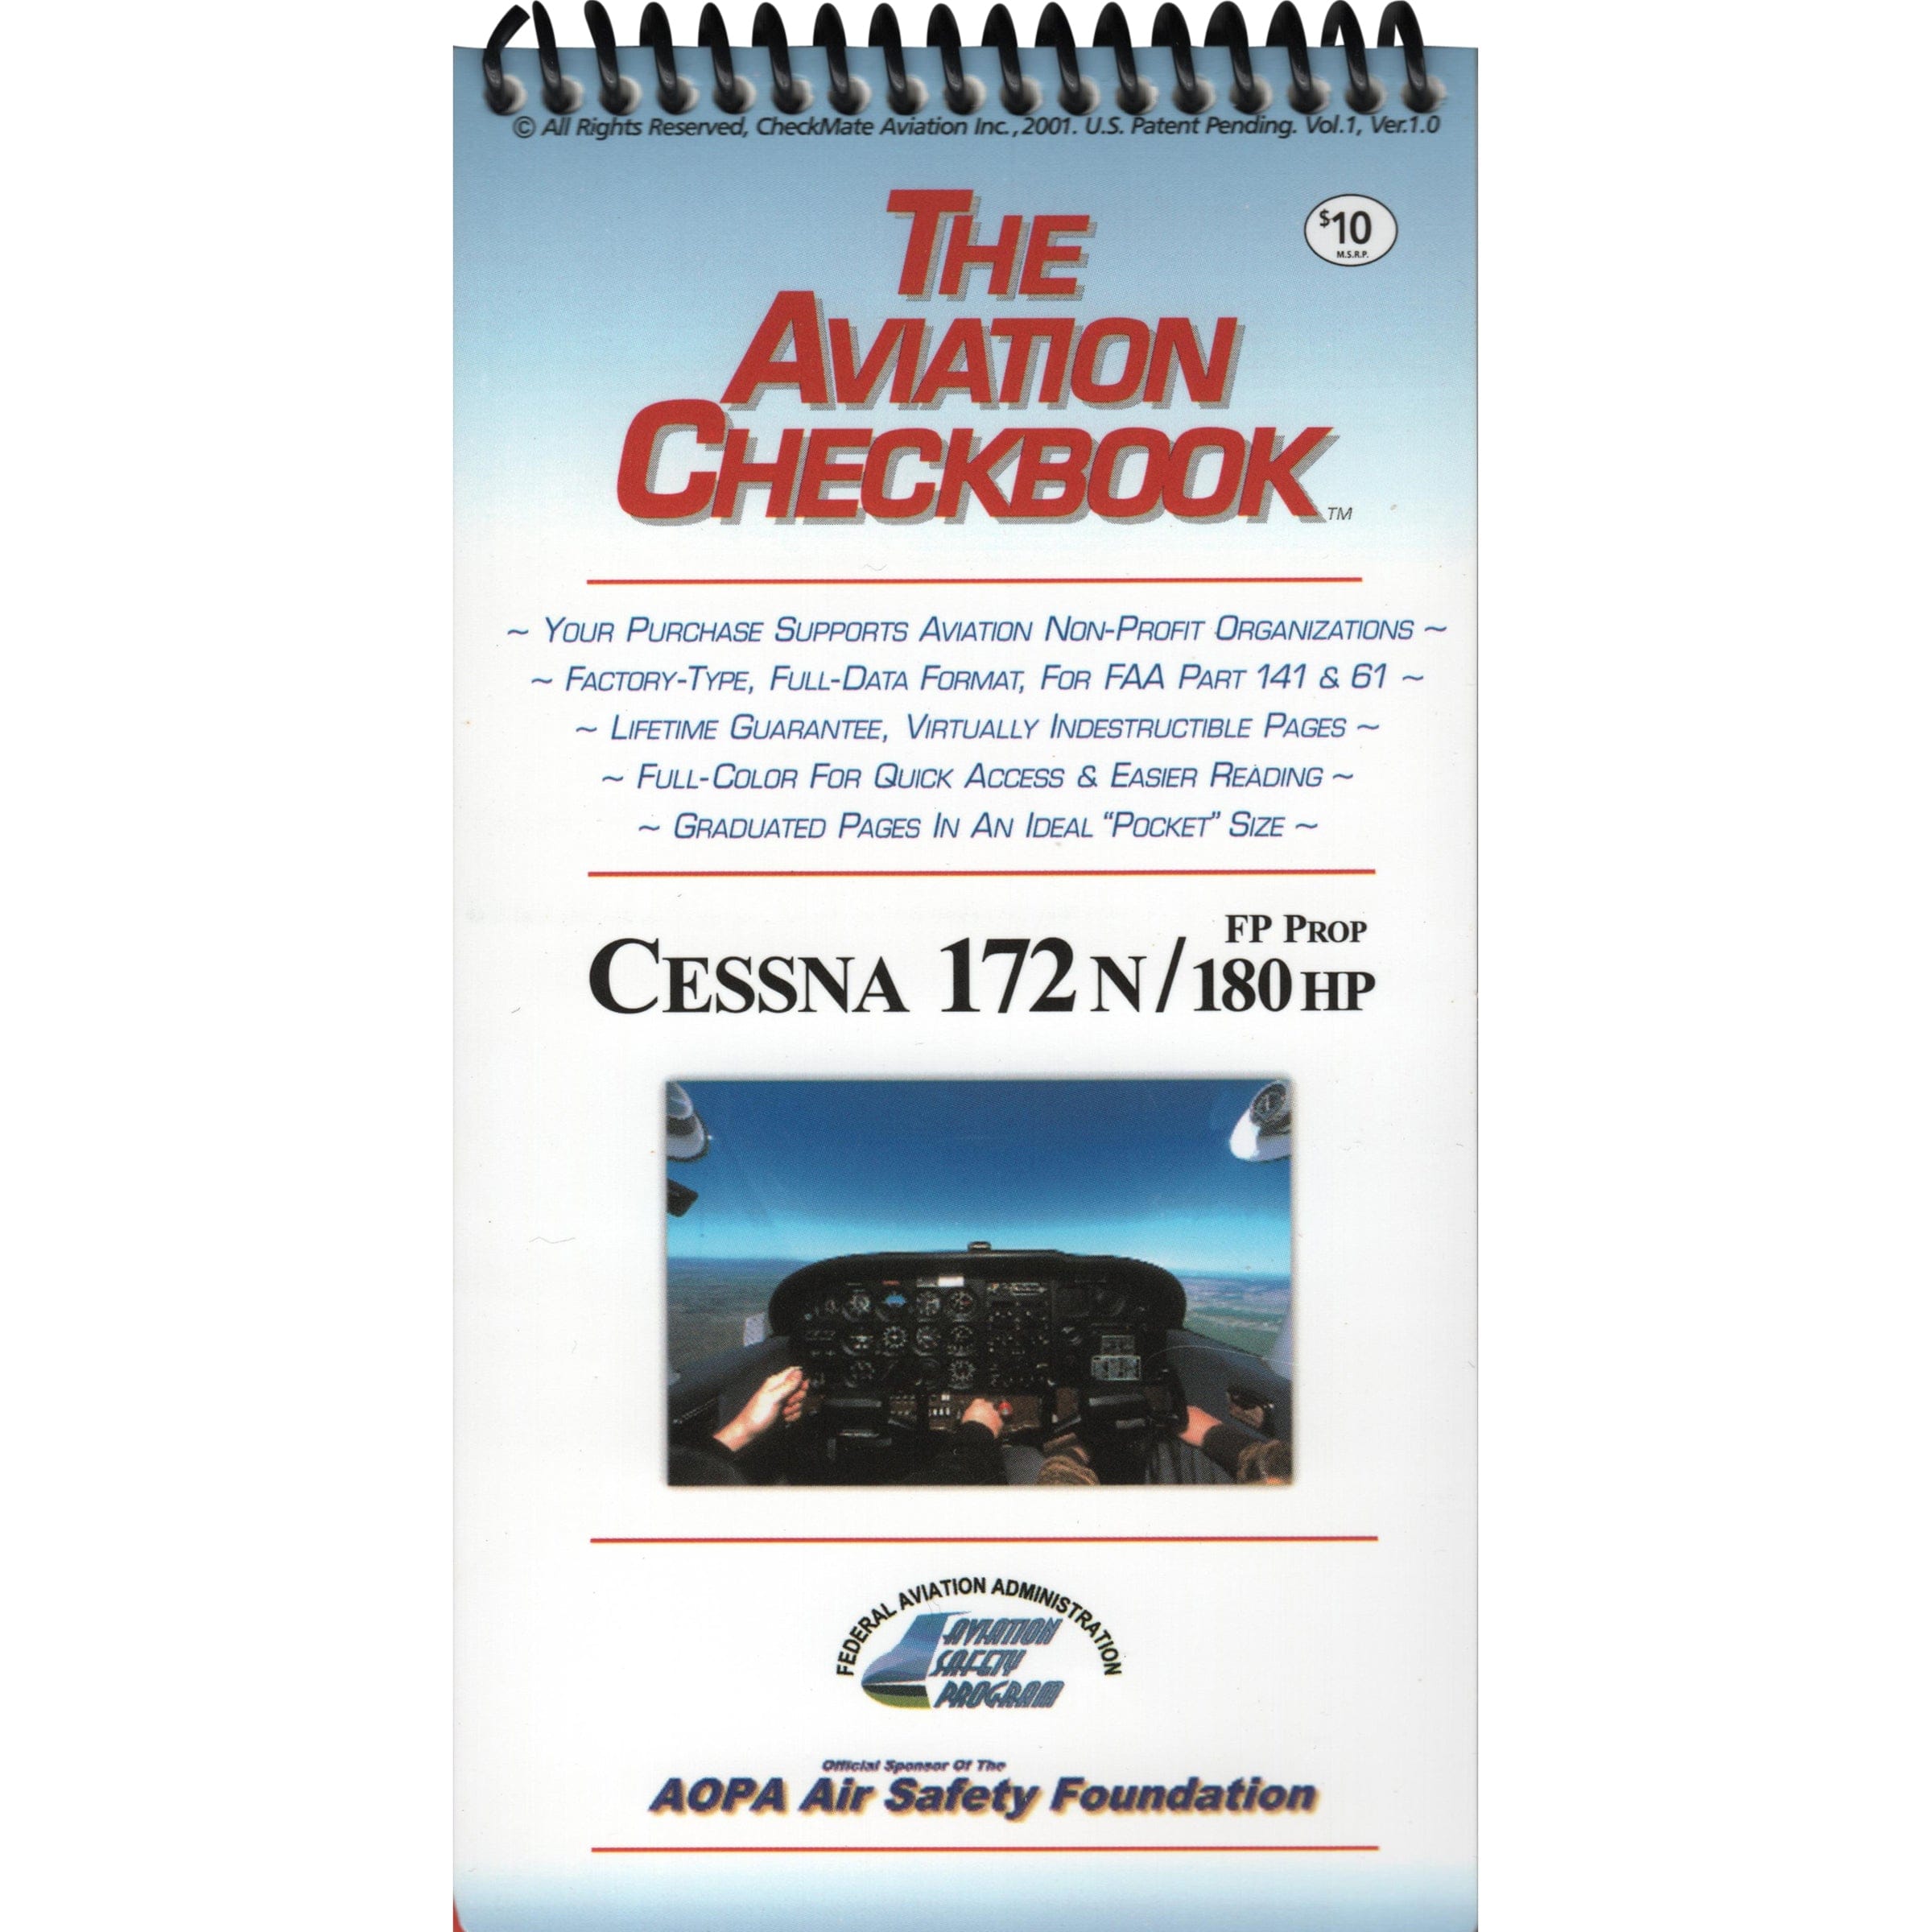 Cessna 172N/180hp FP Prop CheckBook, Volume 1